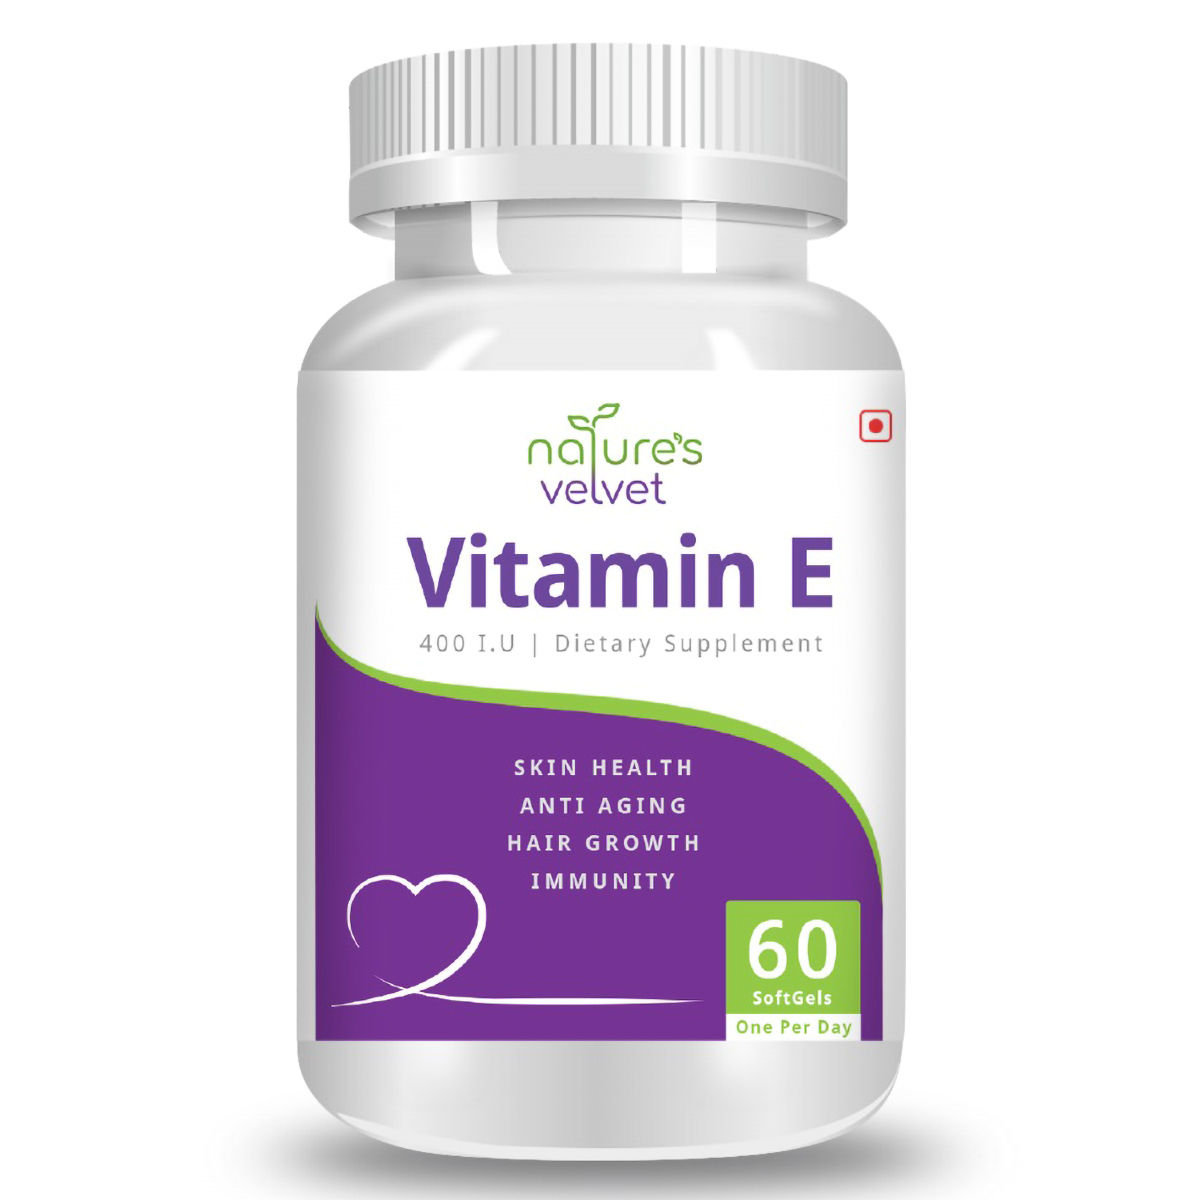 Buy Nature's Velvet Vitamin E 400 IU, 60 Softgels Online